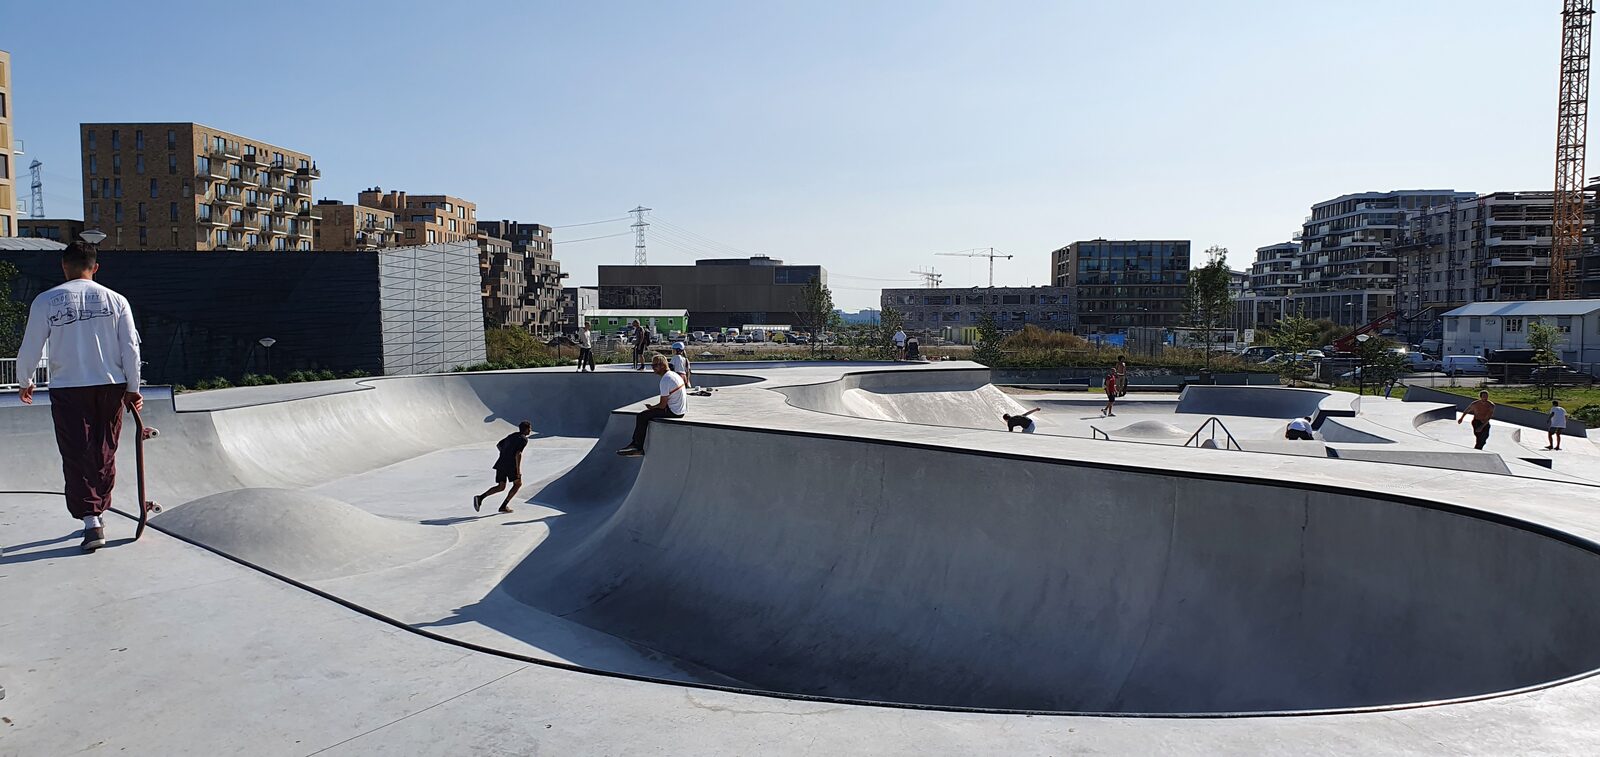 Wacht even Confronteren knecht Camping Zeeburg: Het grootste skatepark van Nederland